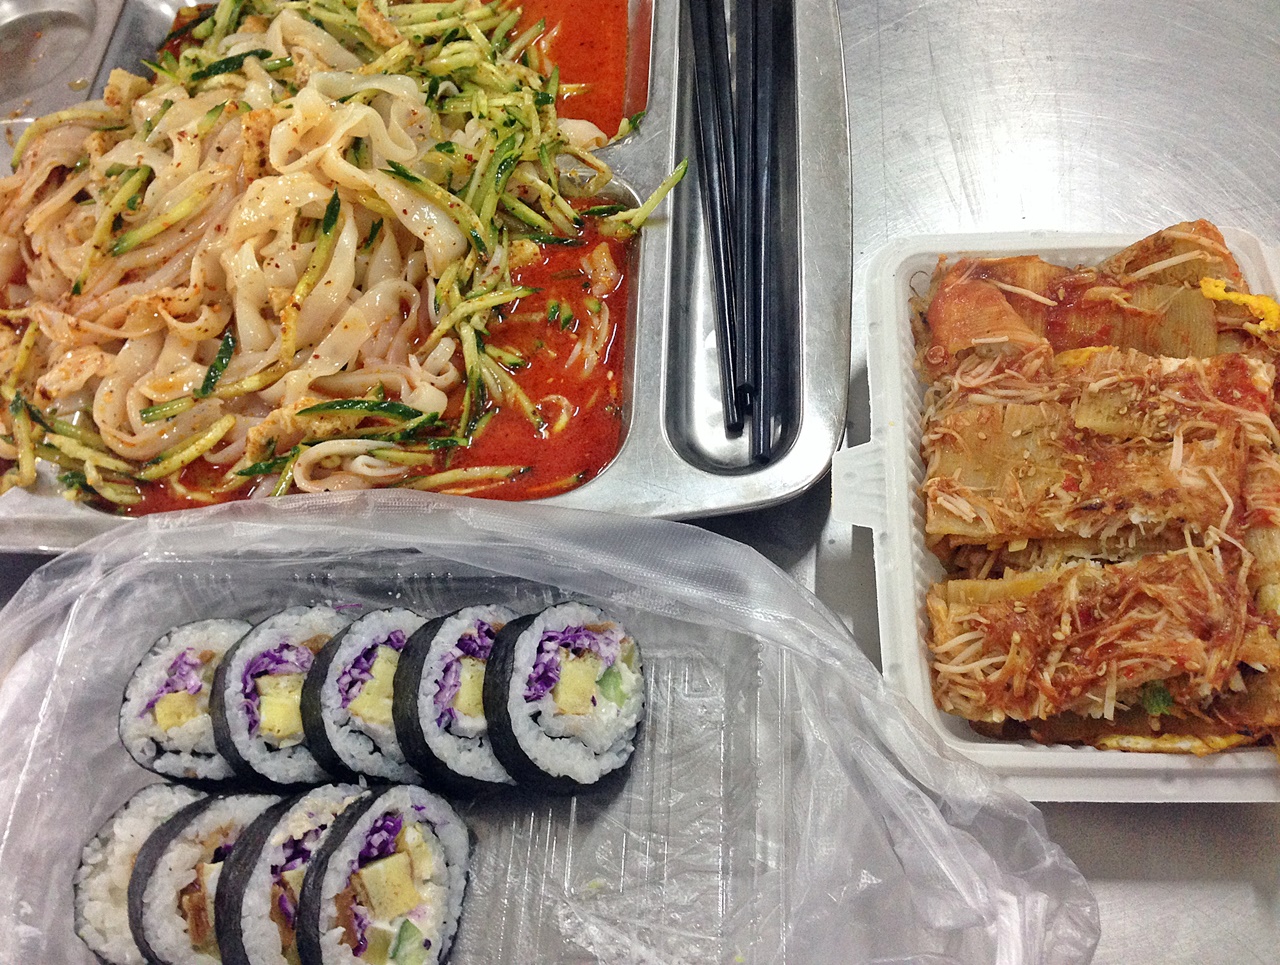 학교에서 자주 사먹었던 음식들. 왼쪽 위 쪽부터 반시계방향으로 량피, 김밥, 카오렁멘.